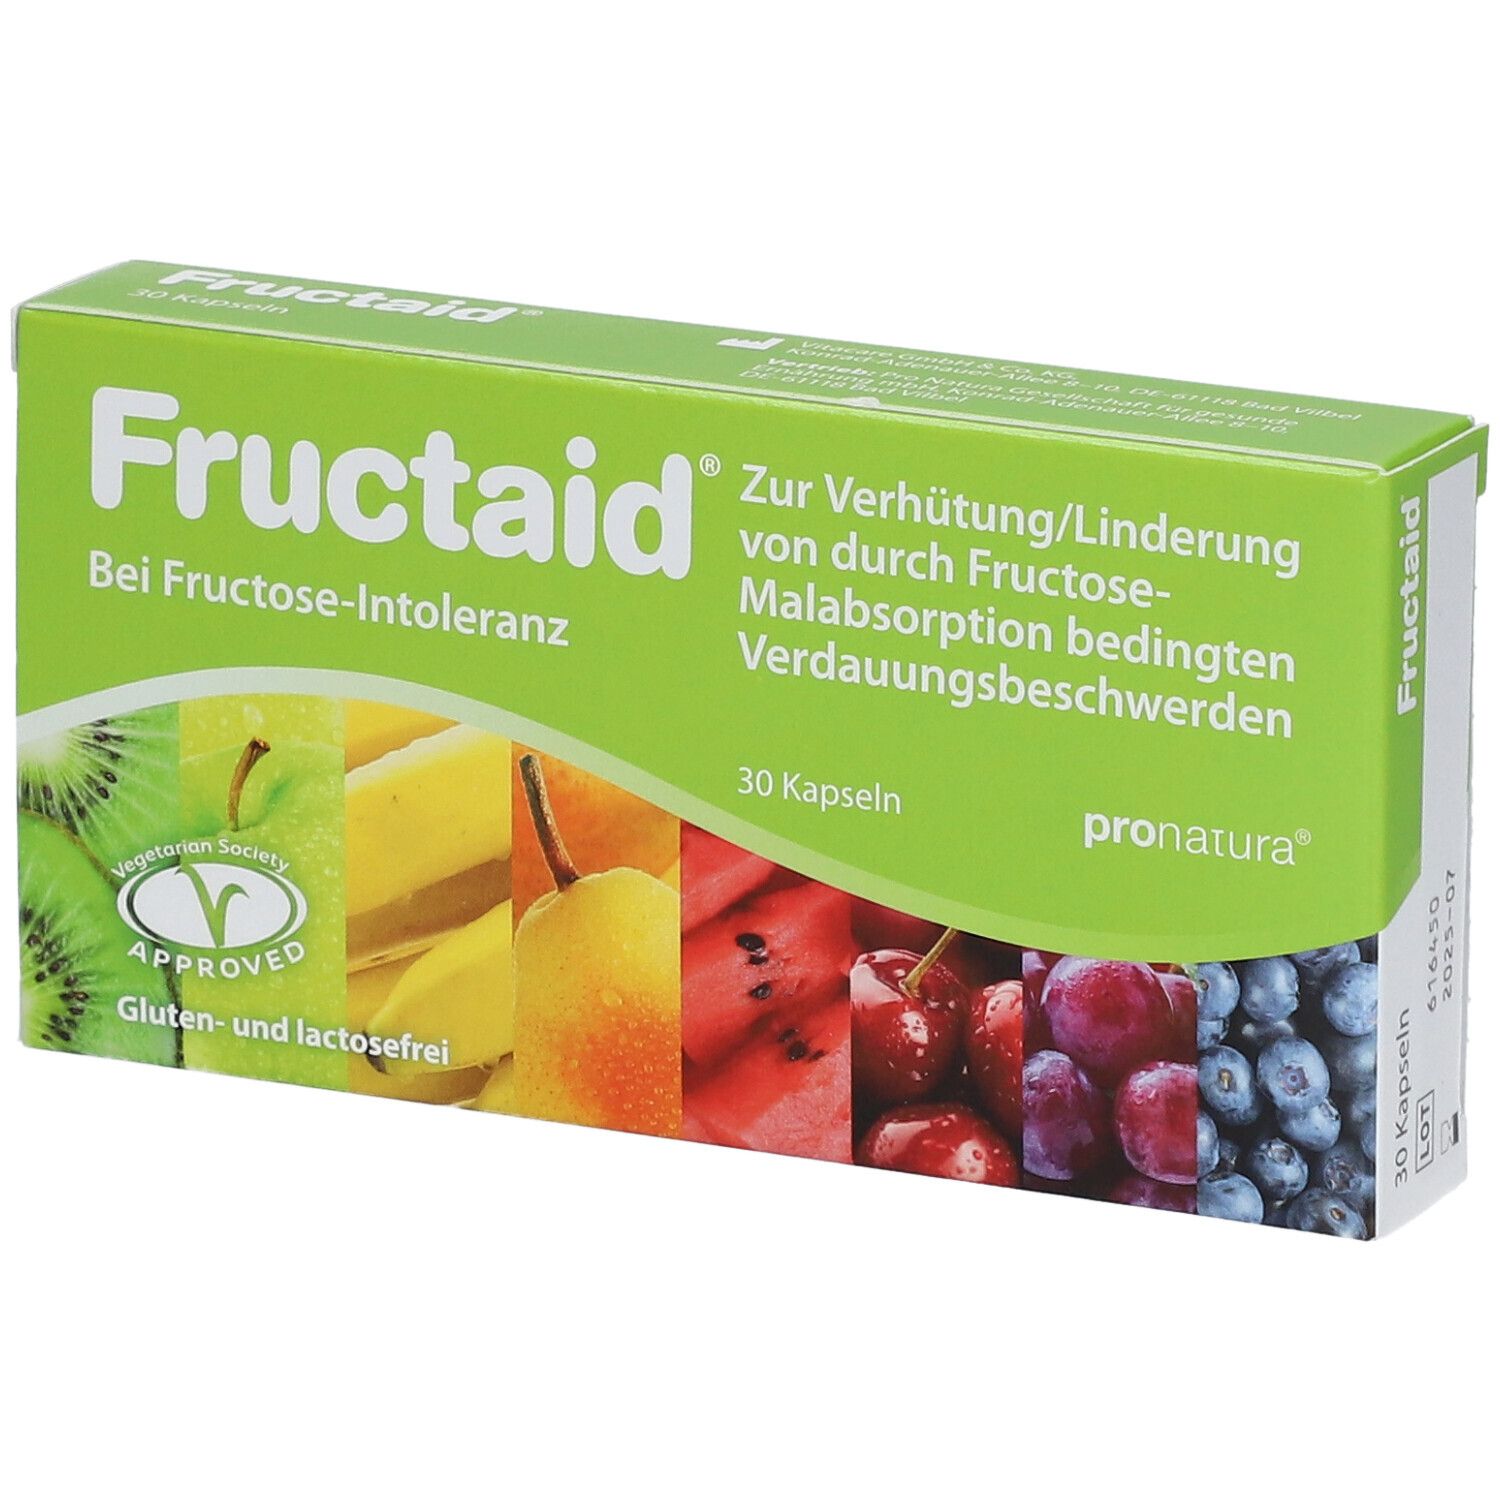 Fructaid®